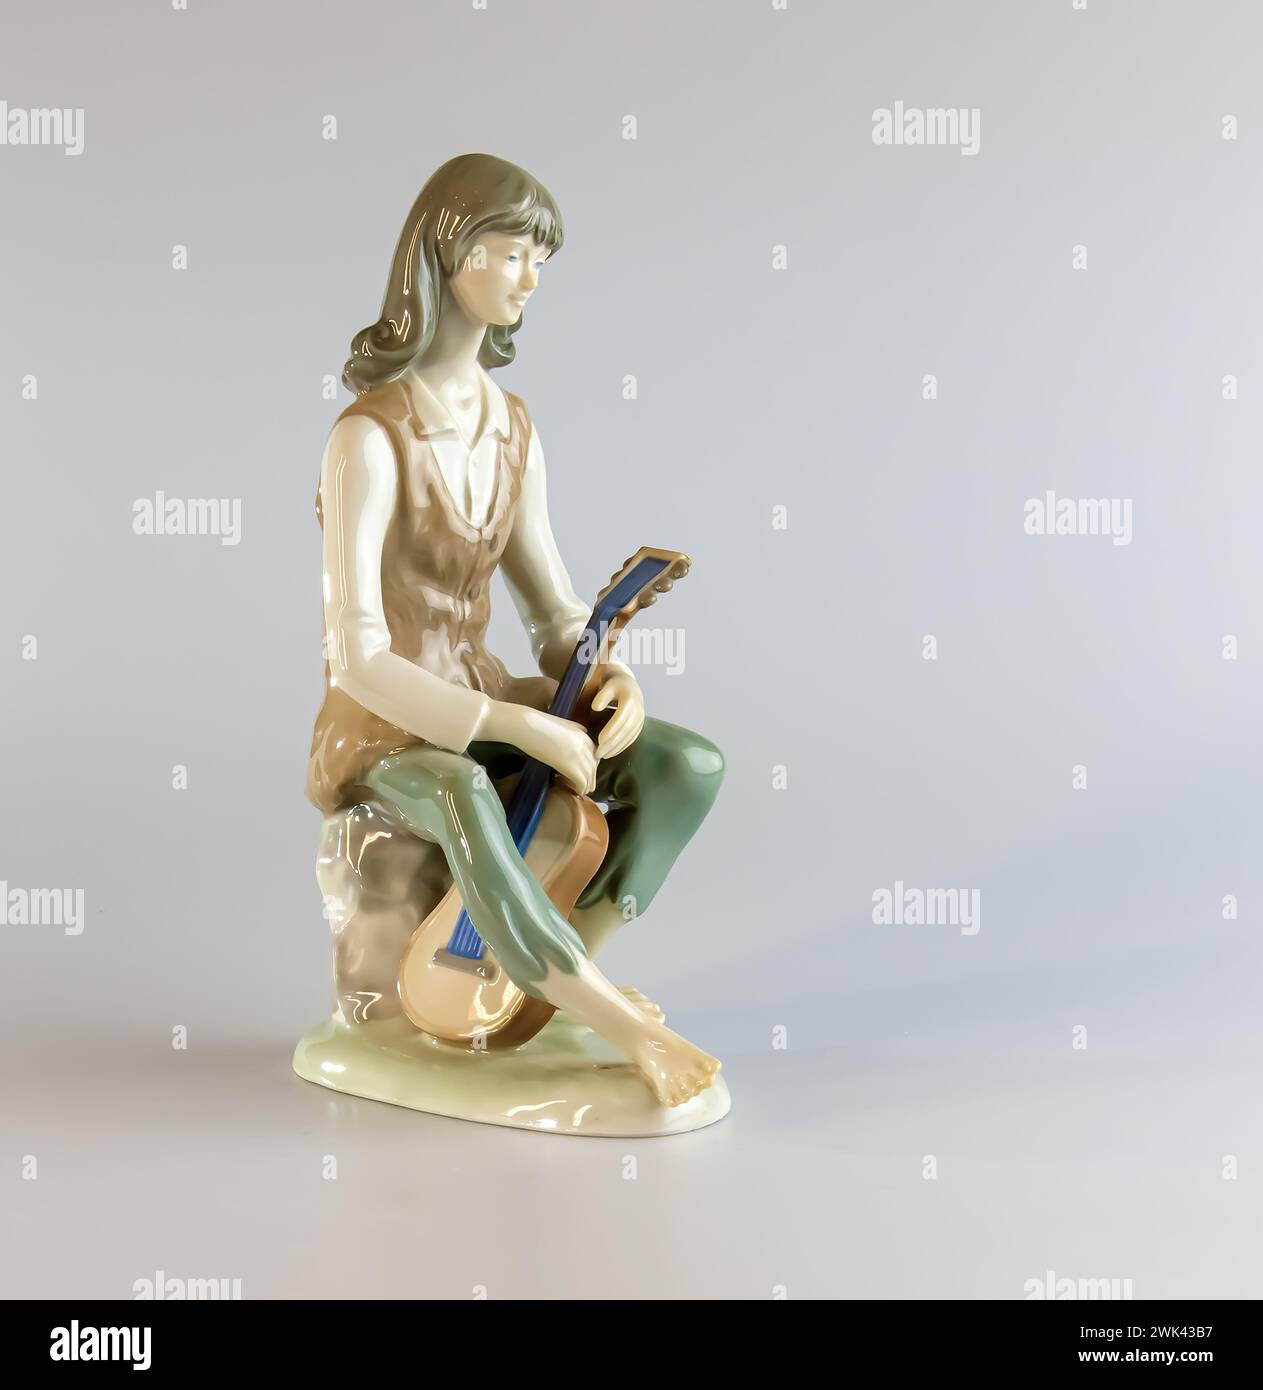 Figurina di un giovane con una chitarra. Statuetta in porcellana realizzata nella RDT. Foto Stock